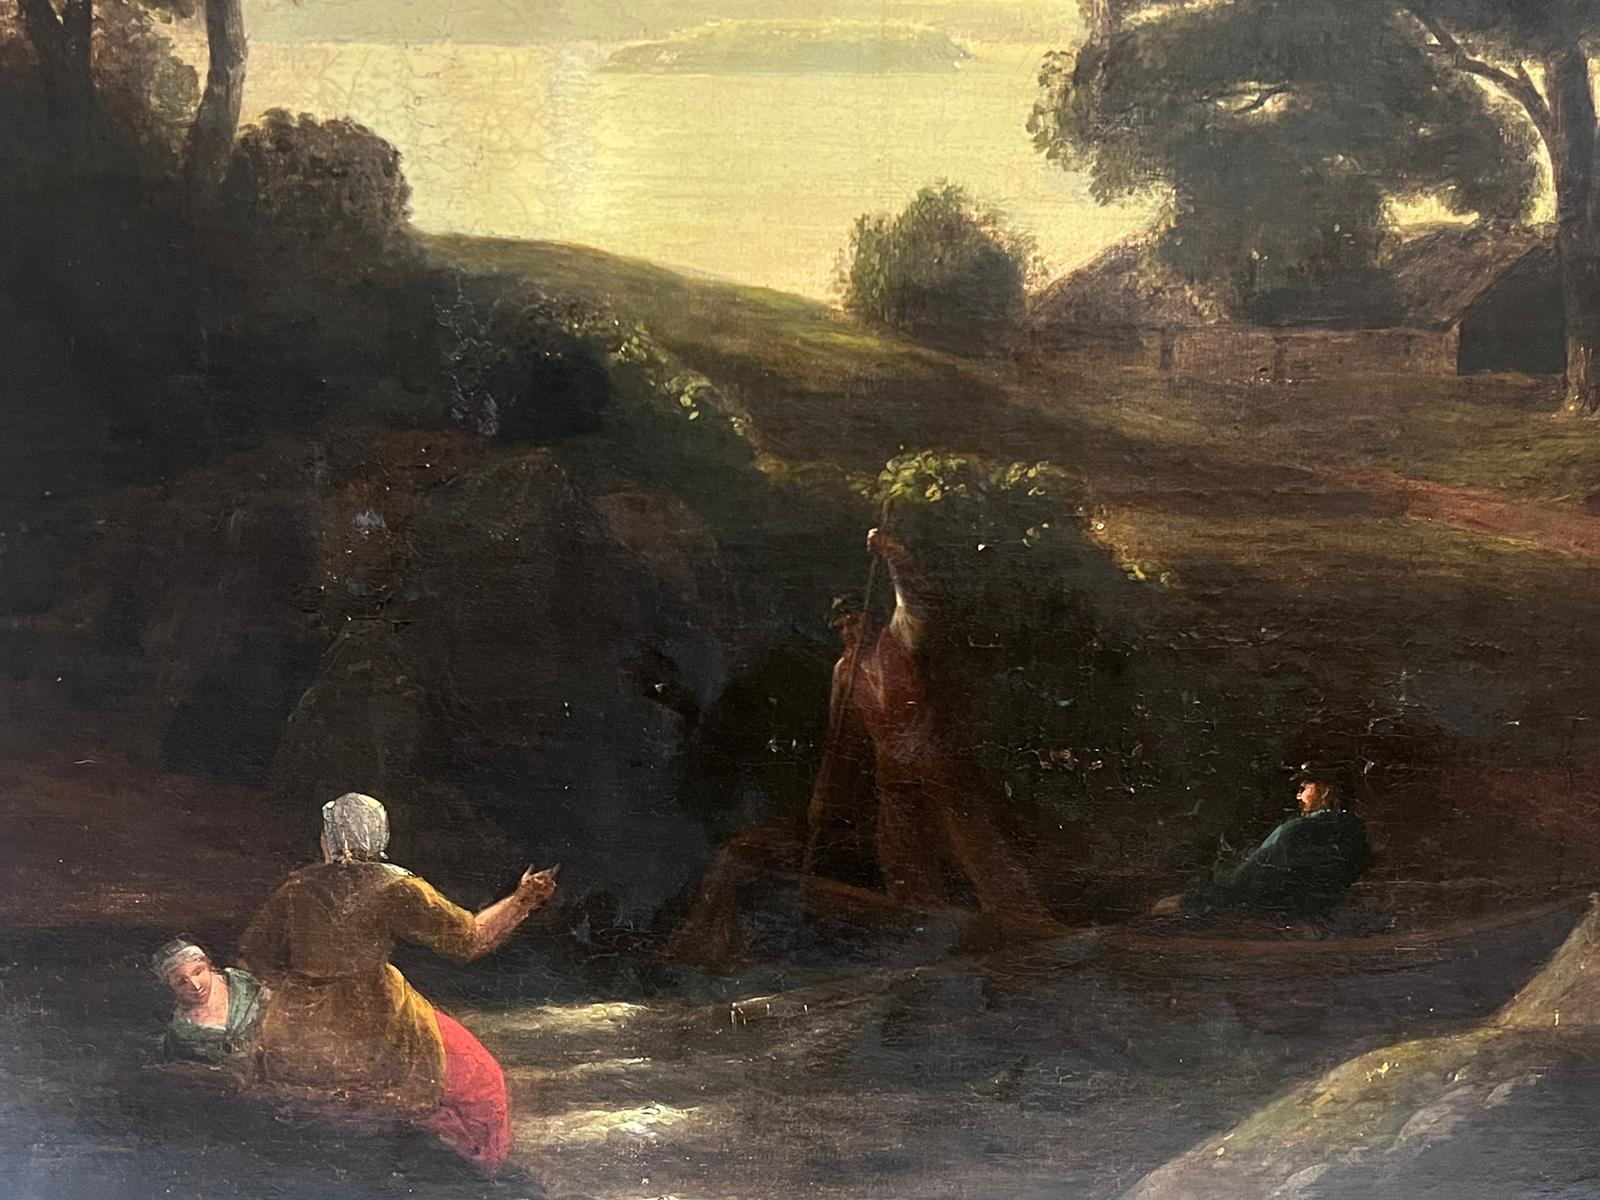 Landschaft in der Abenddämmerung
Britische Schule, 18. Jahrhundert
Öl auf Leinwand, ungerahmt
Gemälde: 32 x 41 Zoll
Provenienz: Privatsammlung, Großbritannien
Zustand: sehr guter und gesunder Zustand